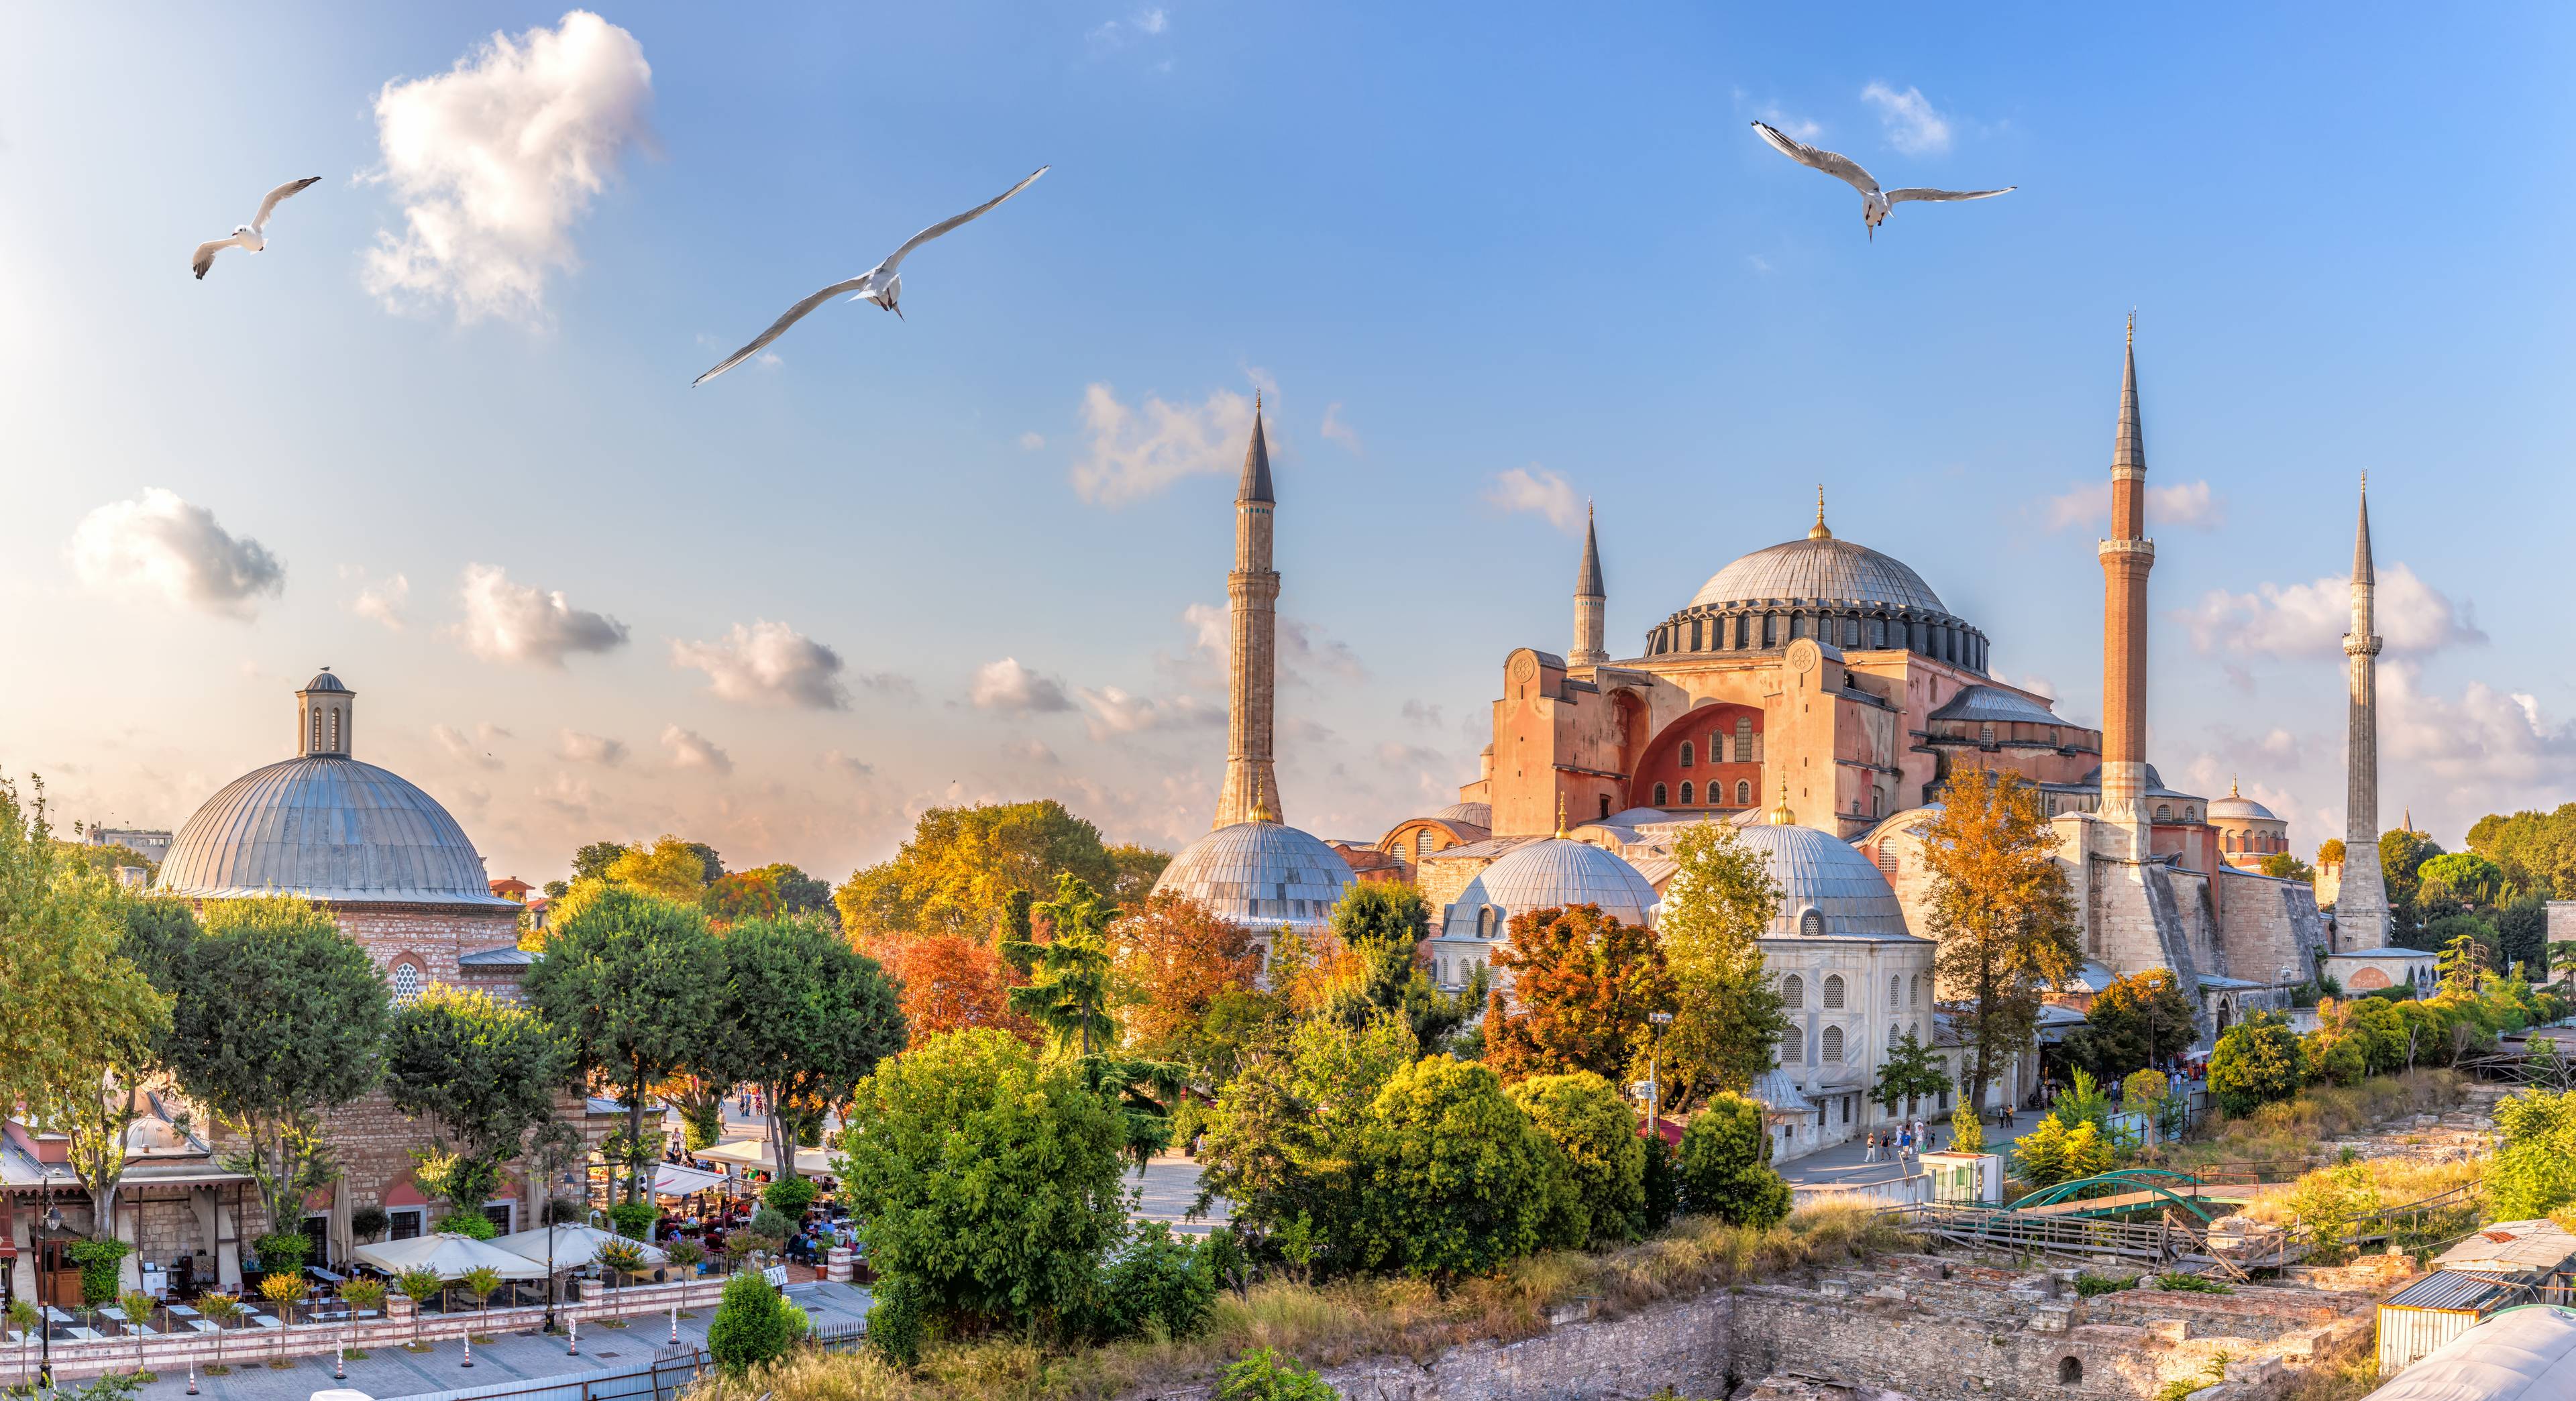 moschea di istanbul al tramonto con gabbiani